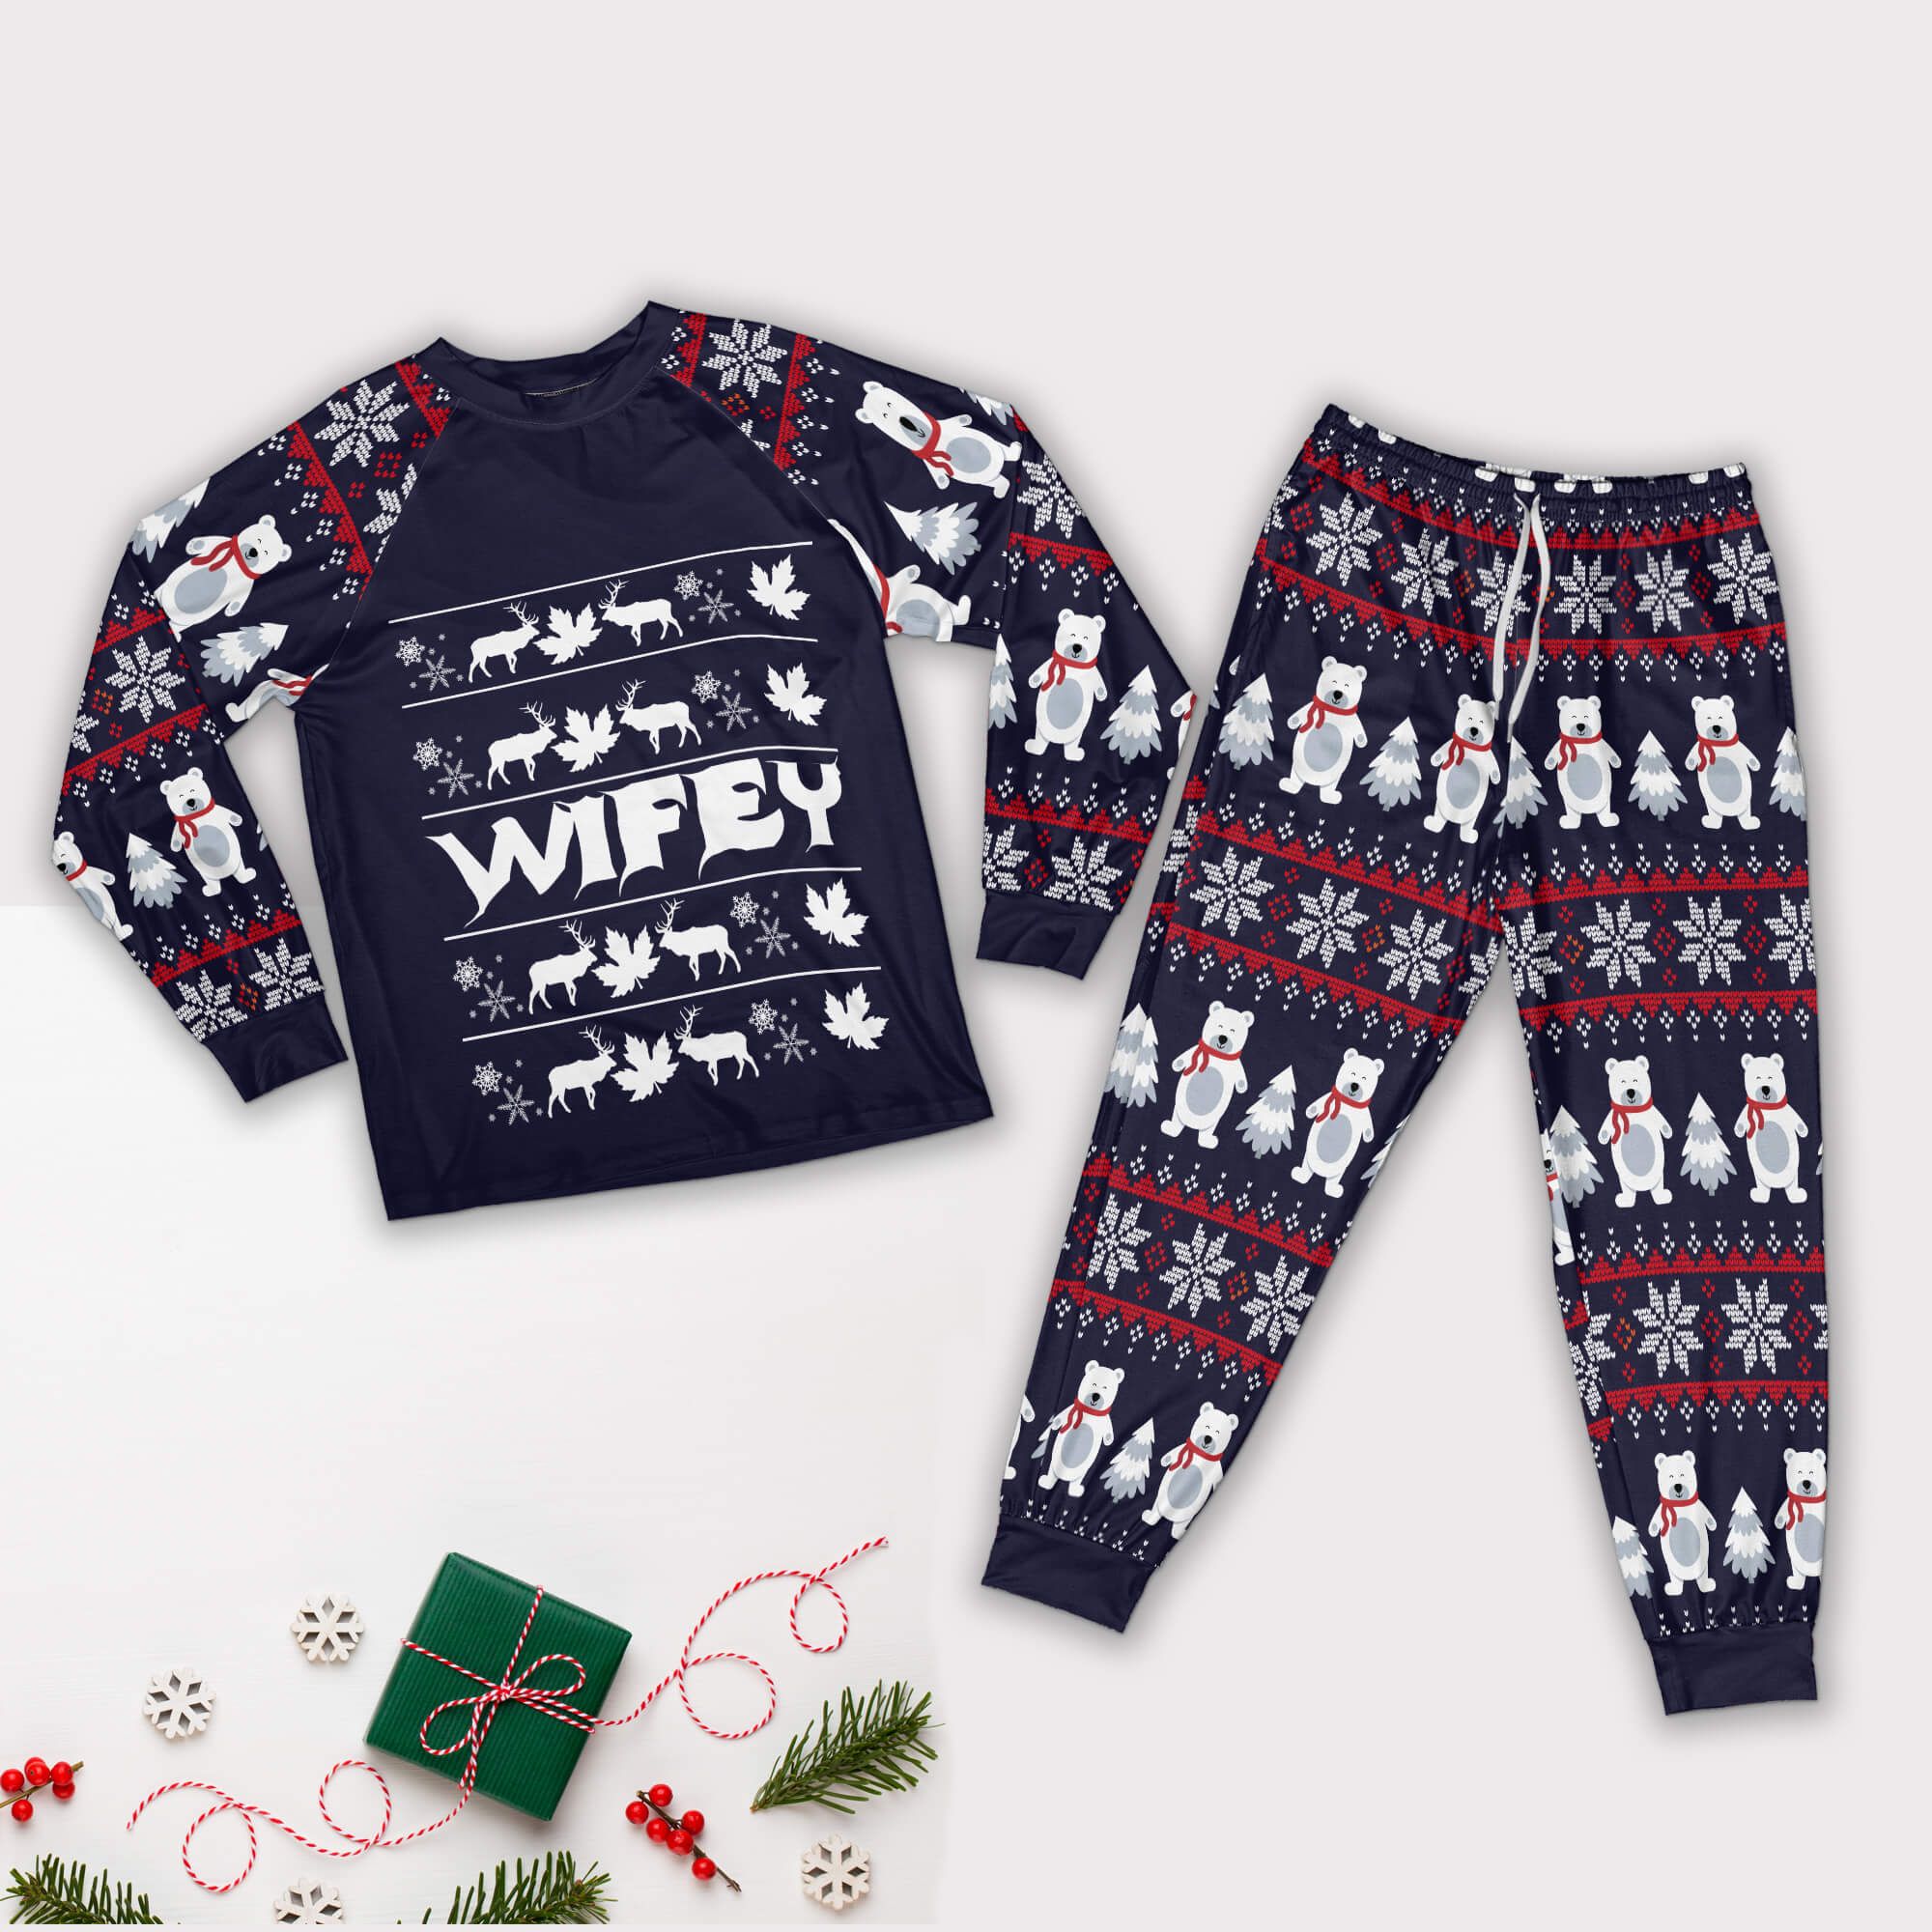 Christmas Pajamas Couple Matching Set Personalized Pajamas Style: Wifey Pajamas Set, Color: Navy